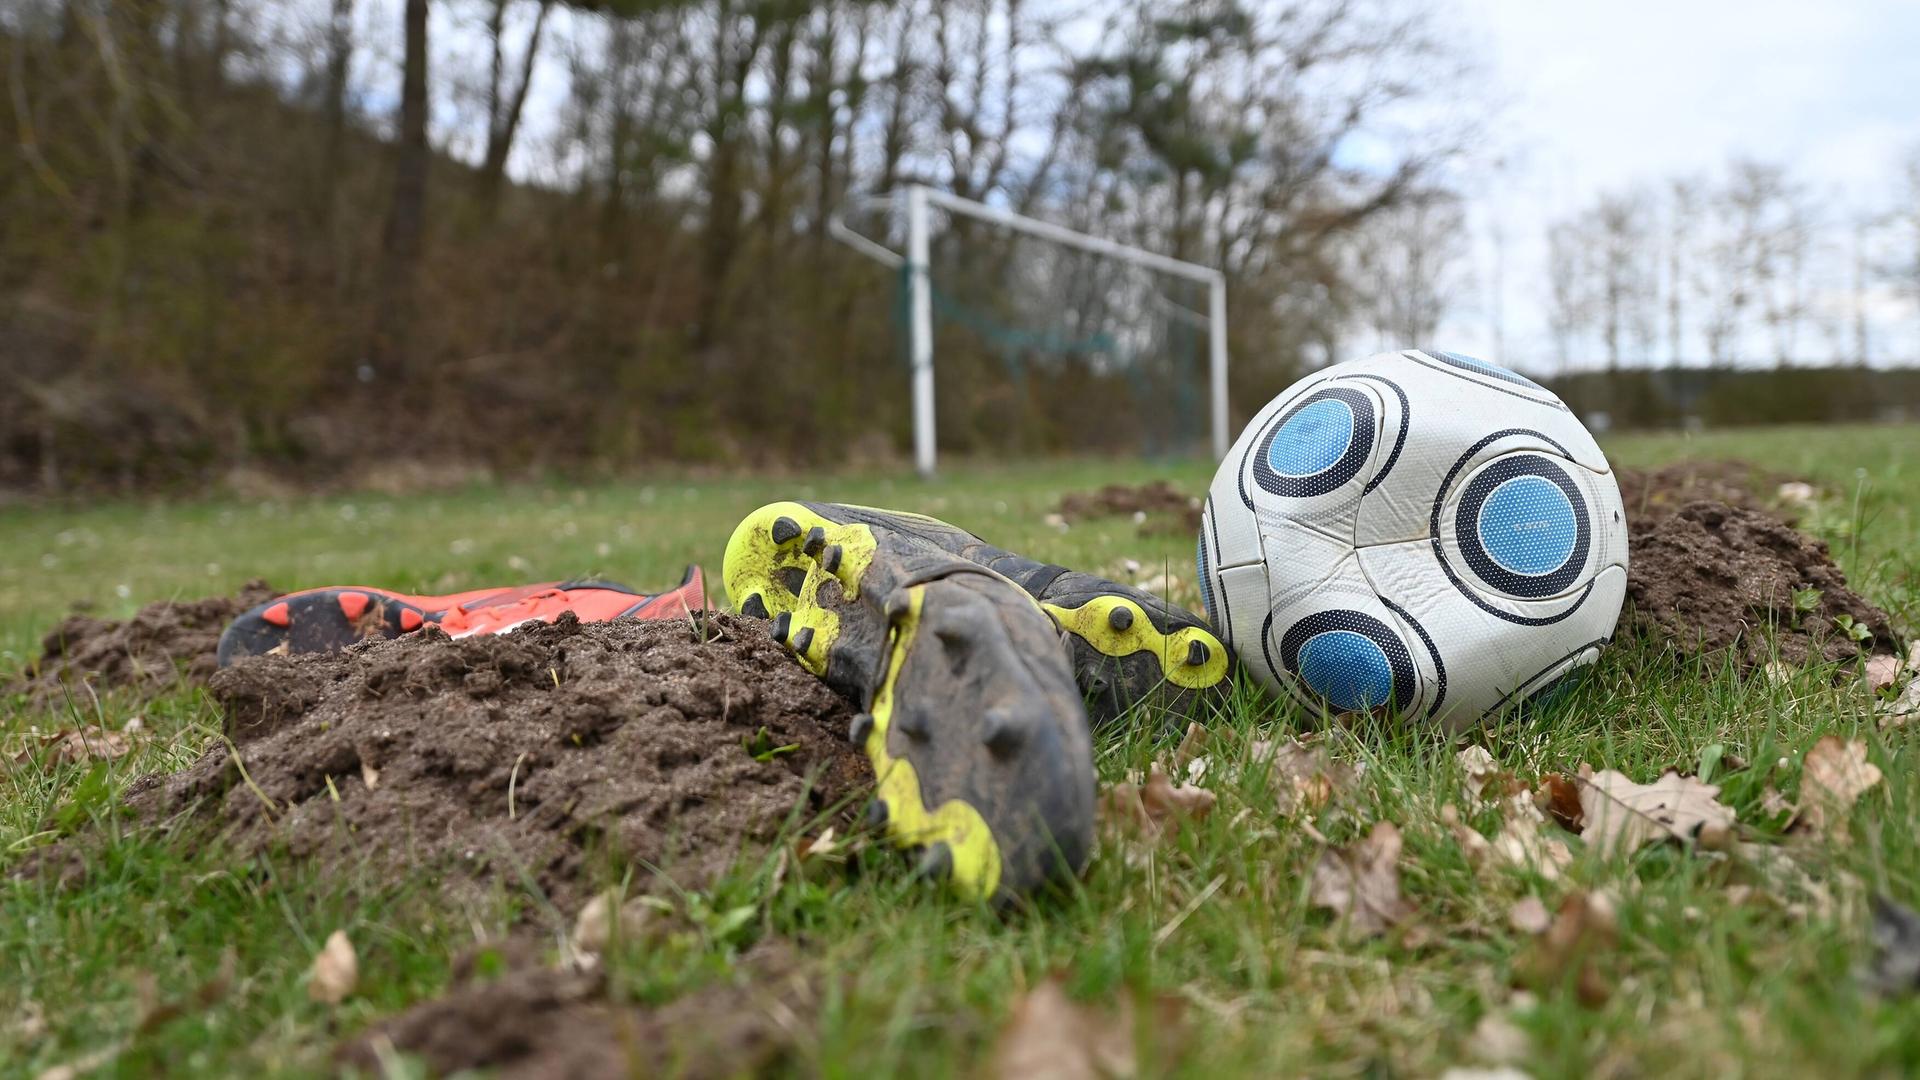 Symbolbild Fußball. Ein Spielball ist platt, ohne Luft. Fussballschuhe liegen auf einem schlechten Rasen mit Maulwurfshügeln